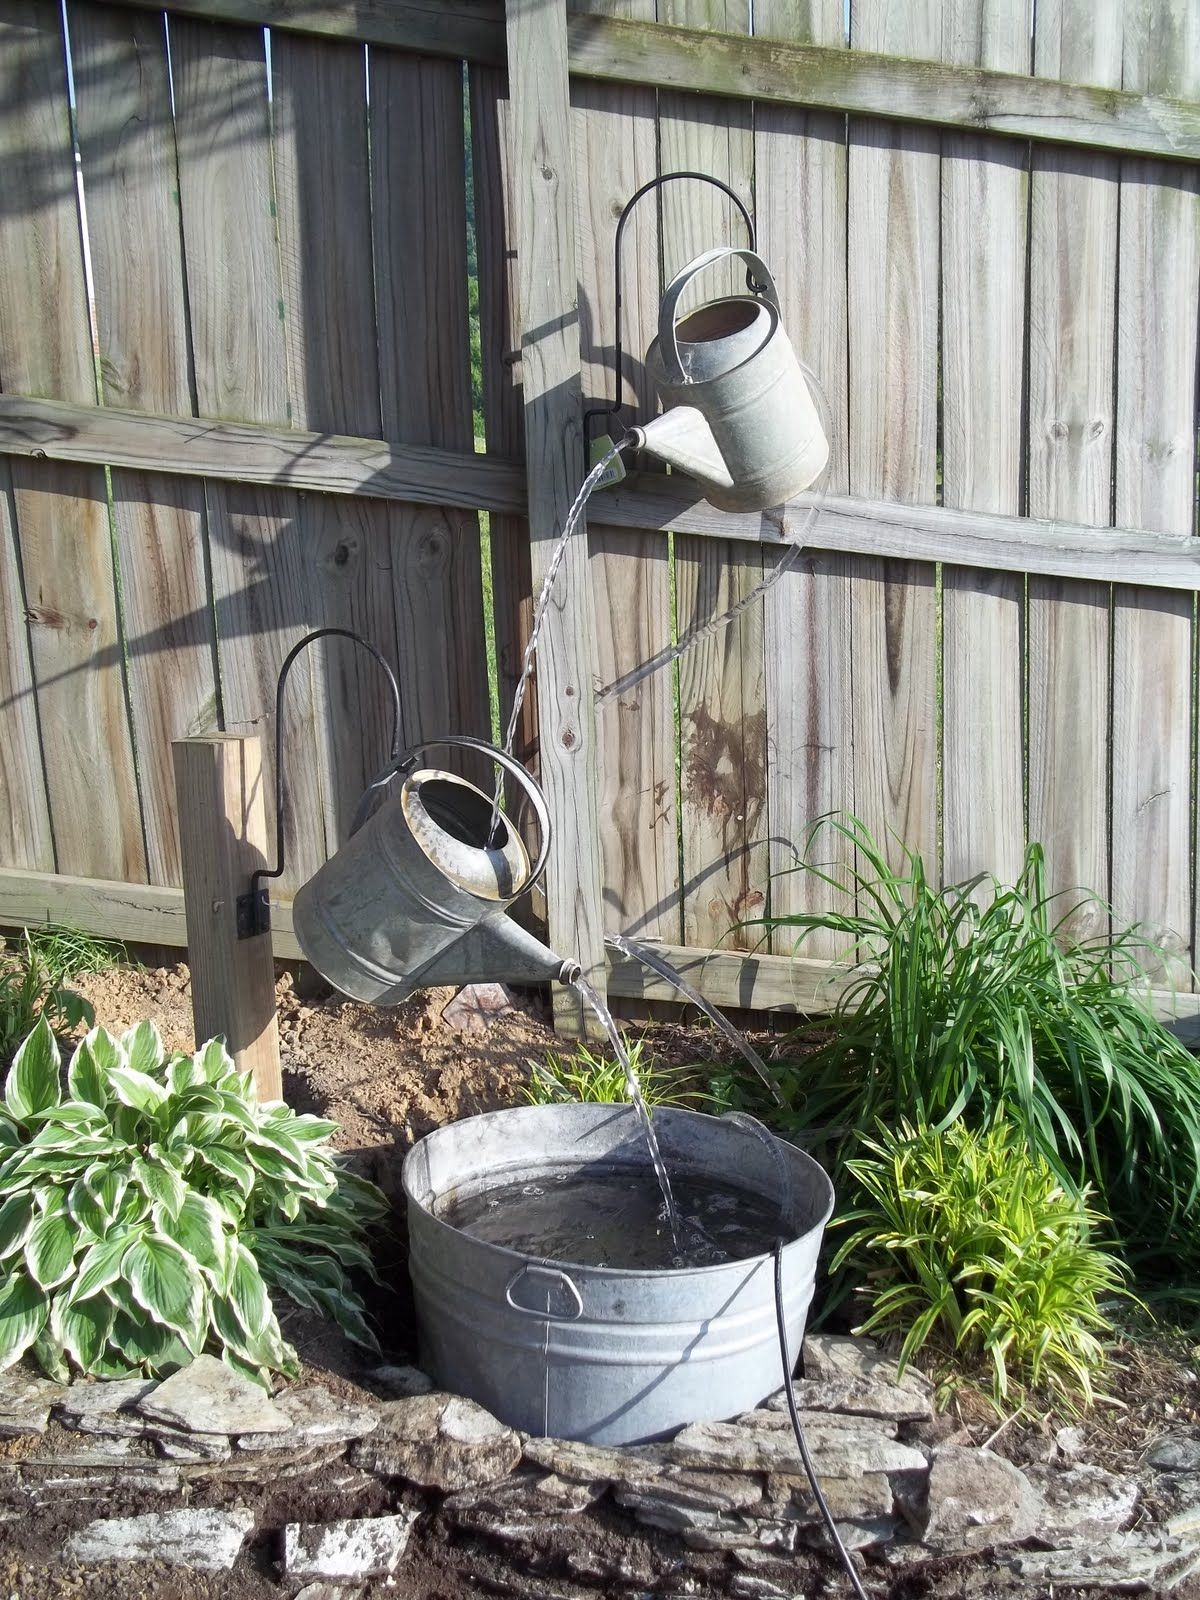 22 Outdoor Fountain Ideas How To Make A Garden Fountain For Your Backyard